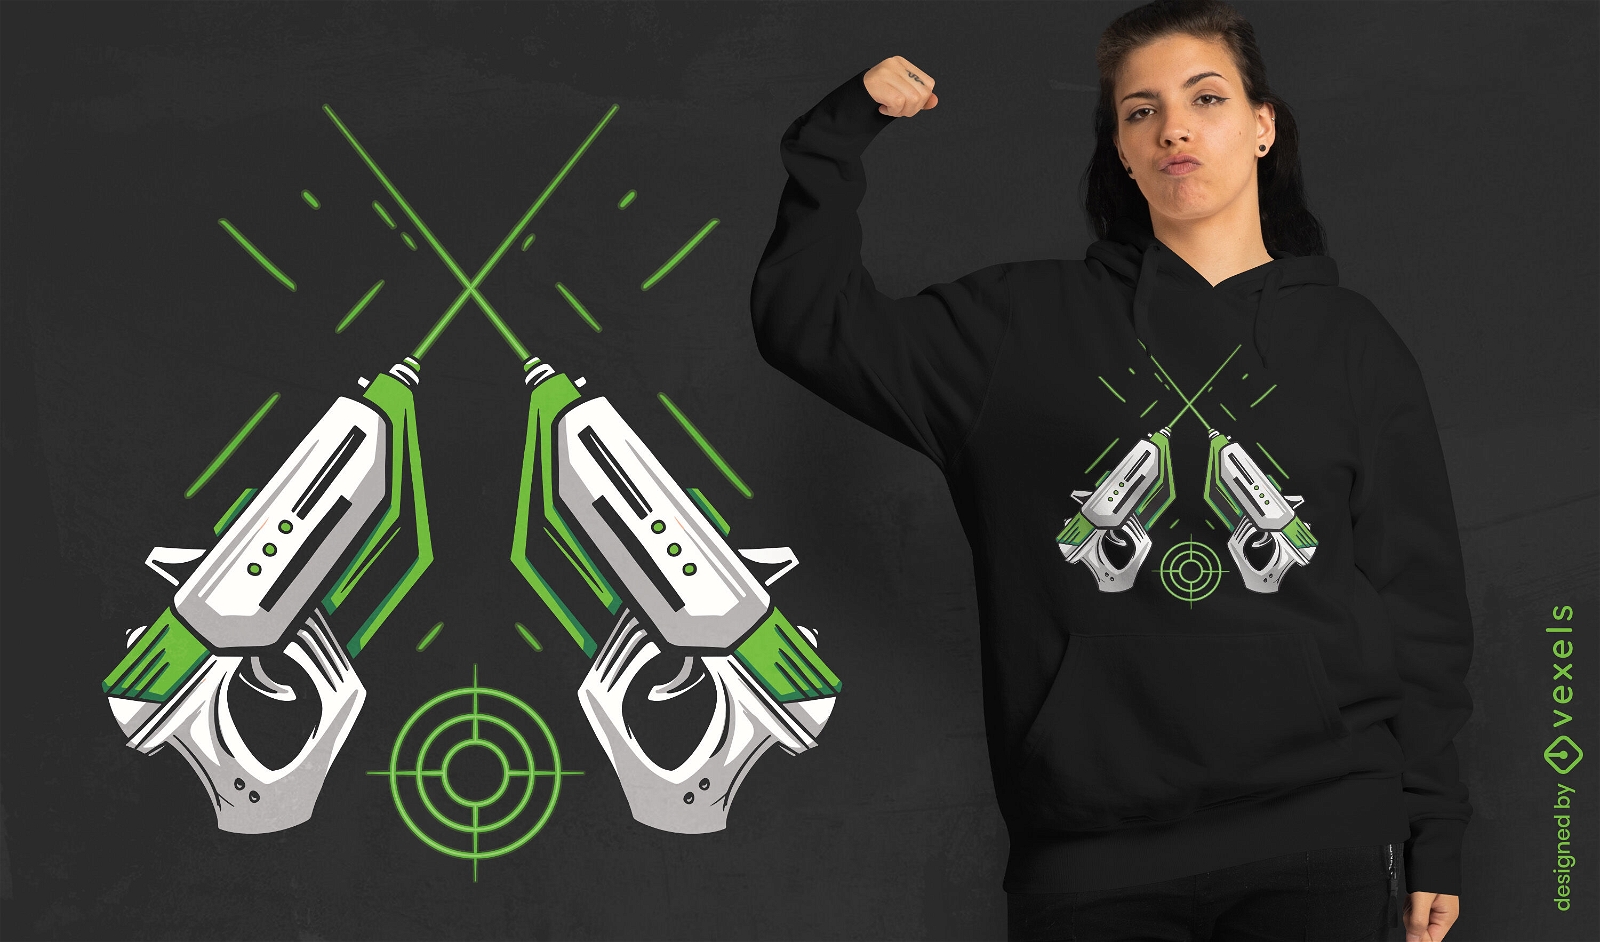 Laser guns gaming t-shirt design